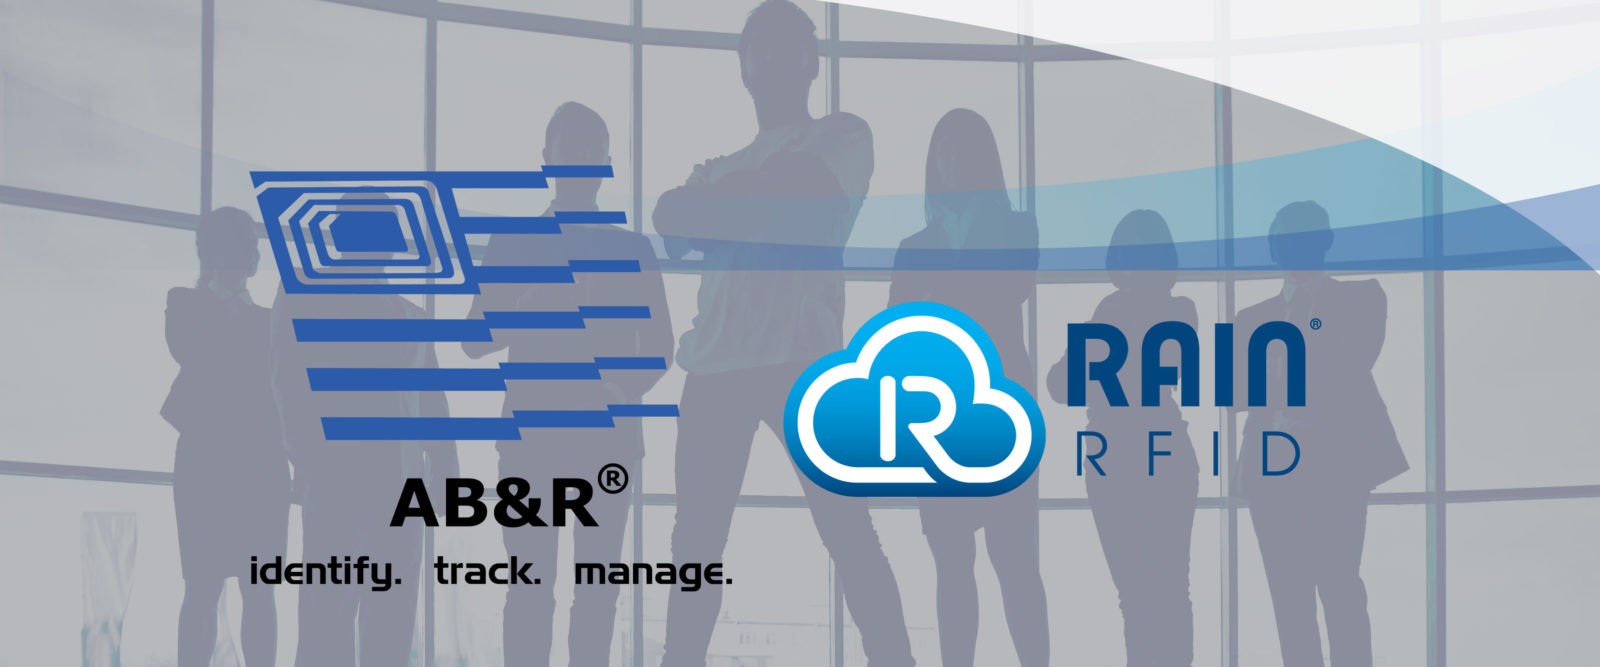 AB&R joins RAIN RFID alliance